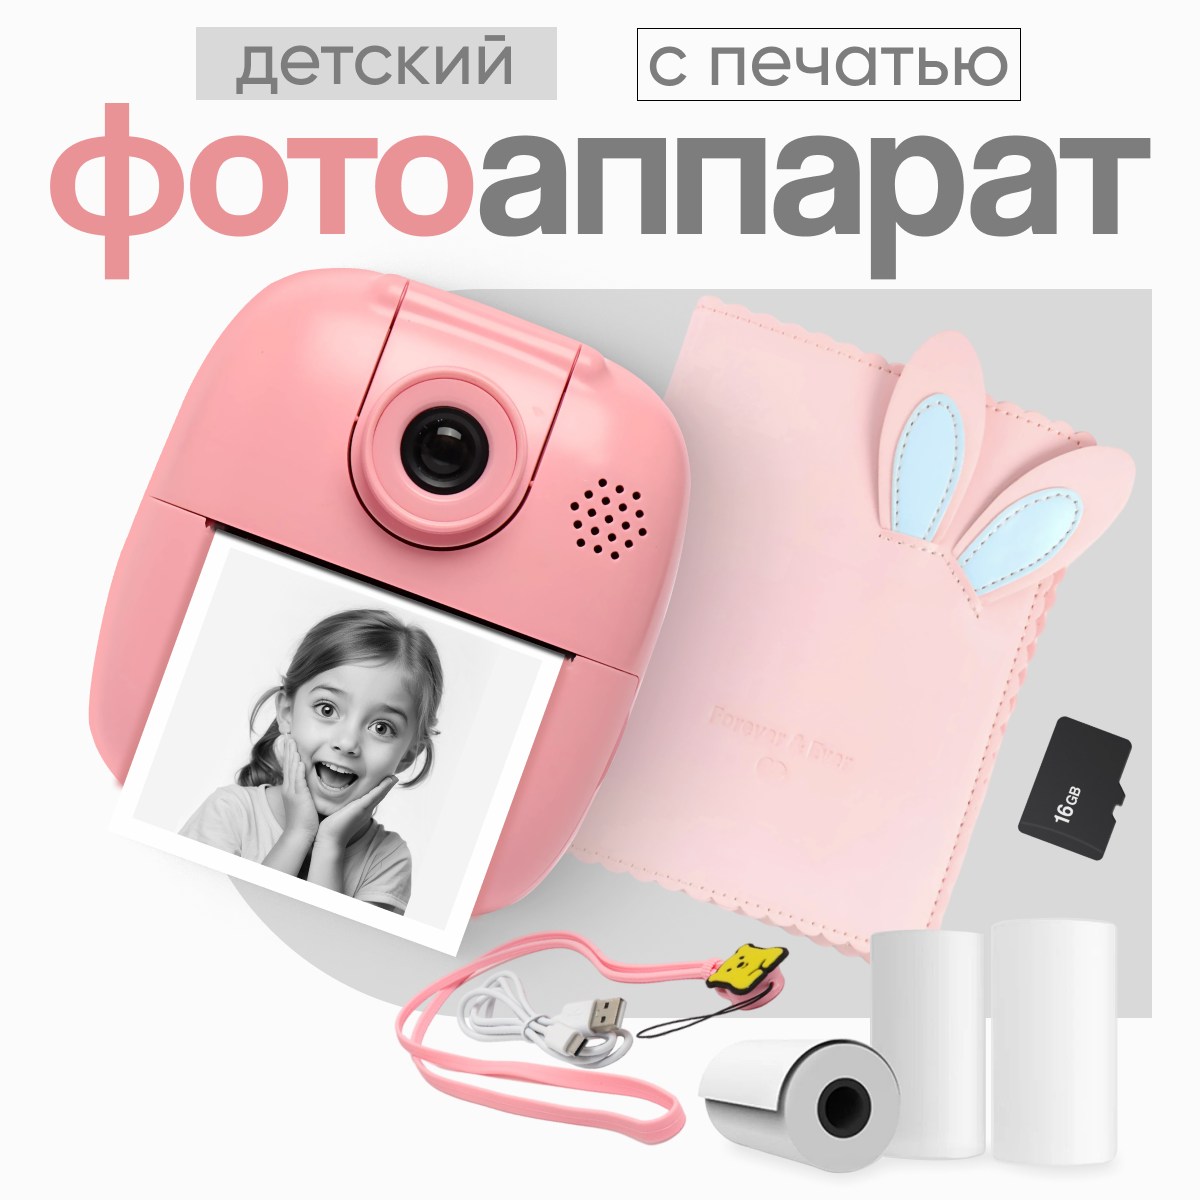 Детский цифровой фотоаппарат с моментальной печатью PRINTCAM RABBIT / Полароид детский / мгновенная печать